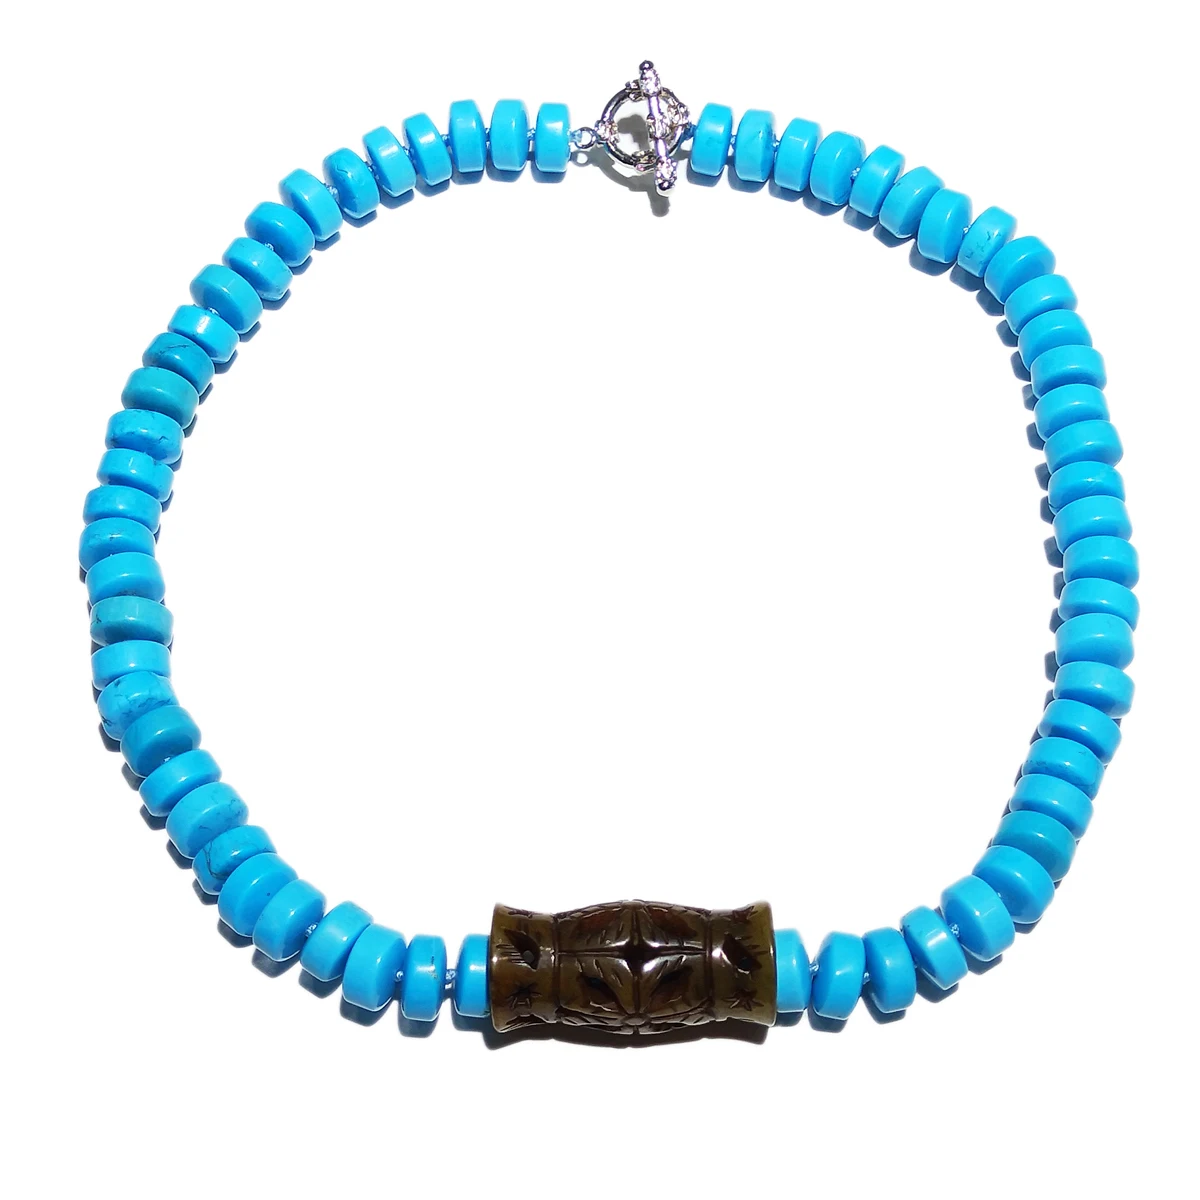 

Lii Ji Синий Бирюзовый говлит коричневый нефрит резной кулон синее ожерелье чокер ожерелье 56 см/22 дюйма женские ювелирные изделия подарок распродажа